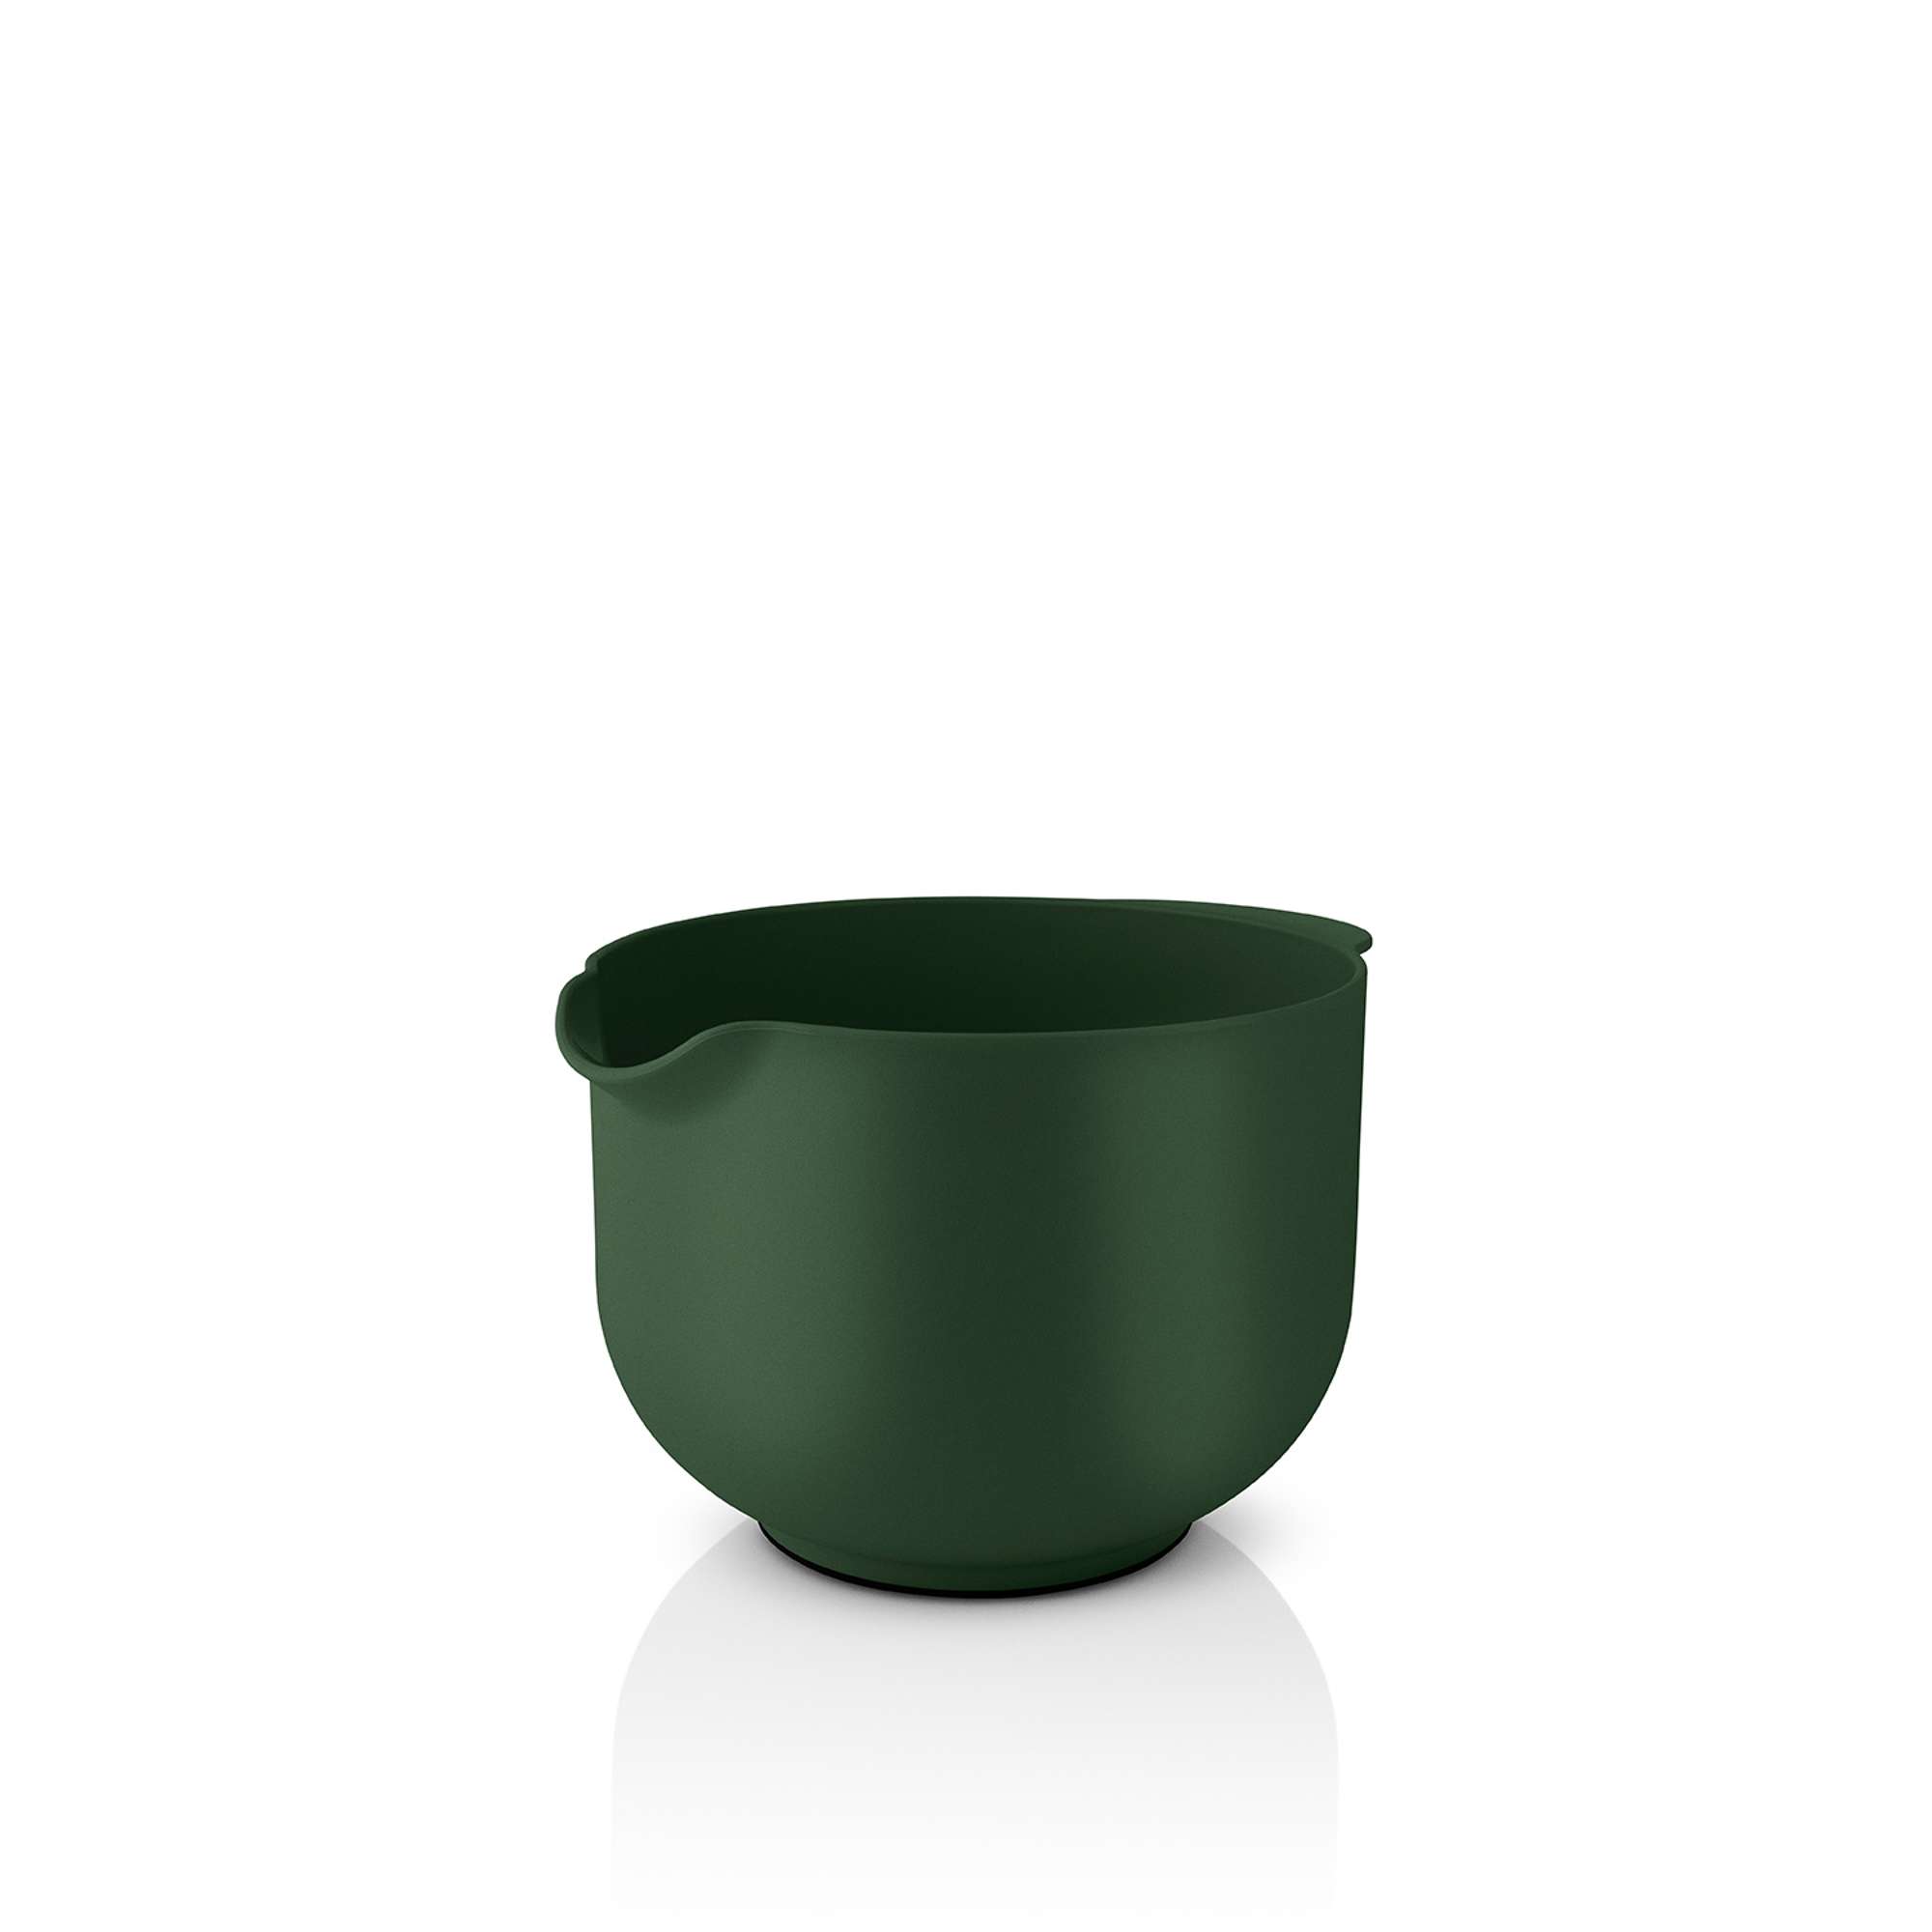 Eva Mixing Bowl Emerald Green, 2 L - Eva Solo @ RoyalDesign